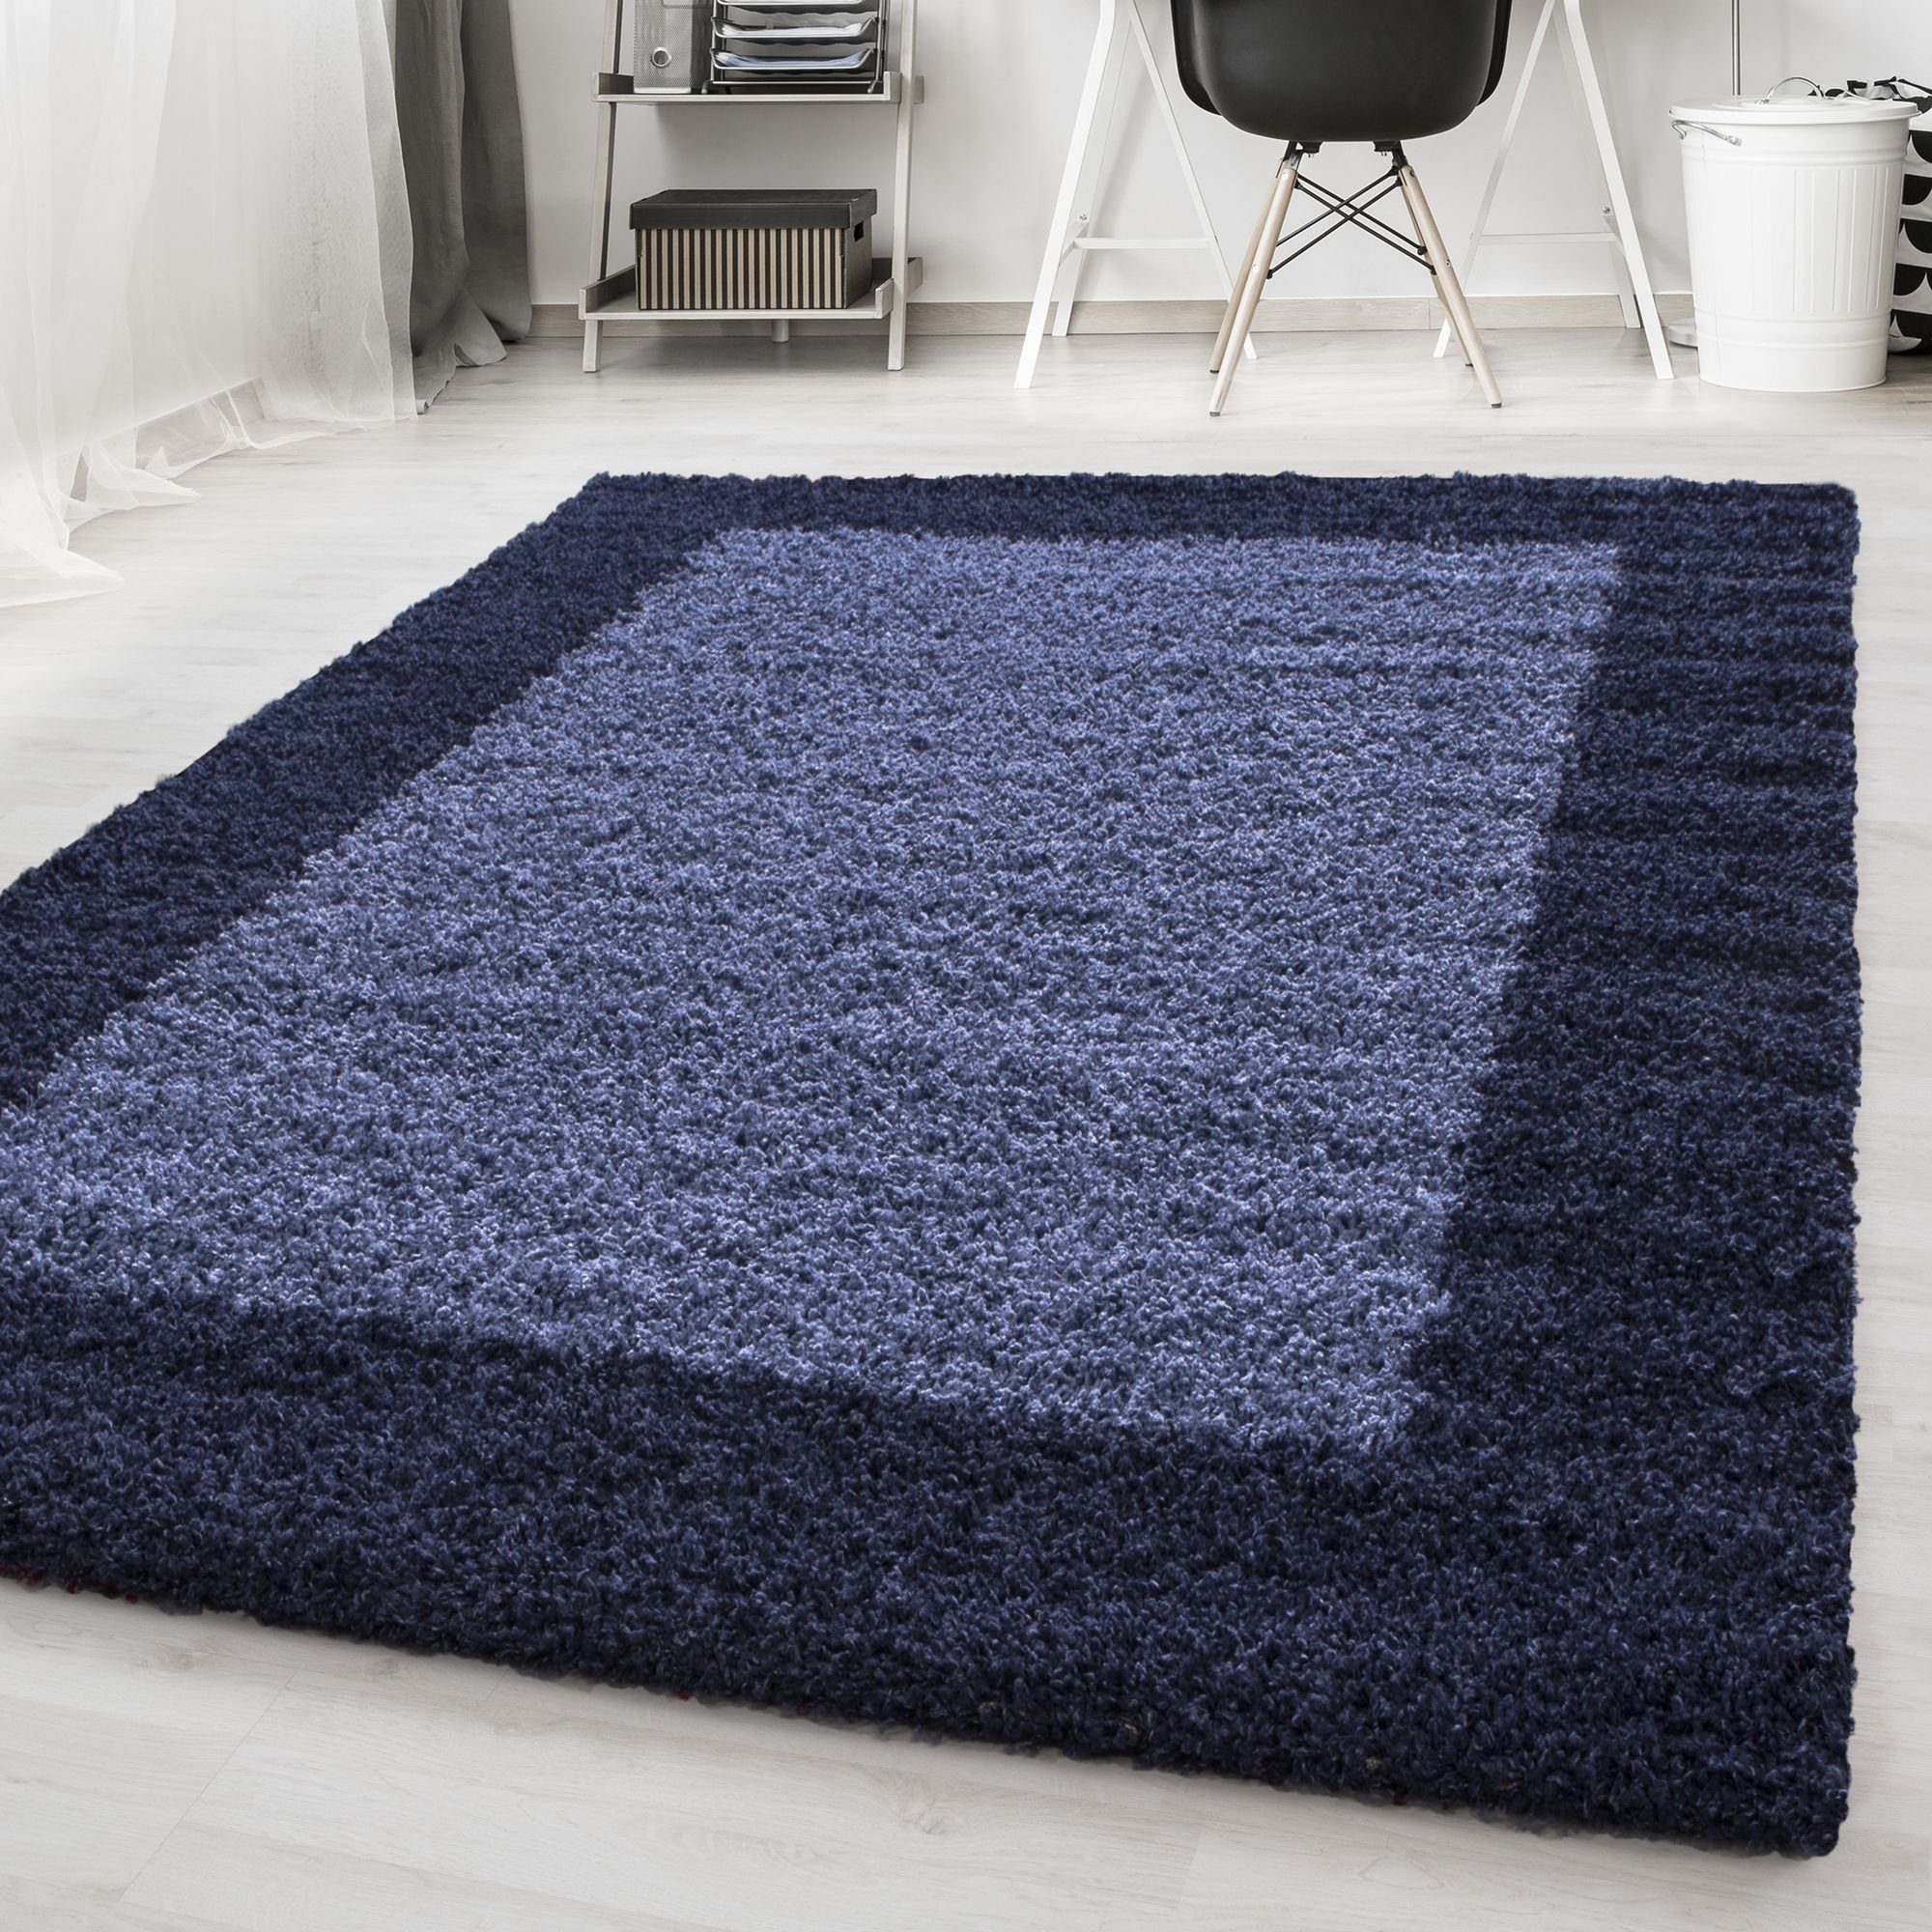 Hochflor-Teppich Bordüre Design, Carpetsale24, Läufer, Höhe: 30 mm, Teppich Wohnzimmer Bordüre Design Shaggy versch. farben und größen Marineblau